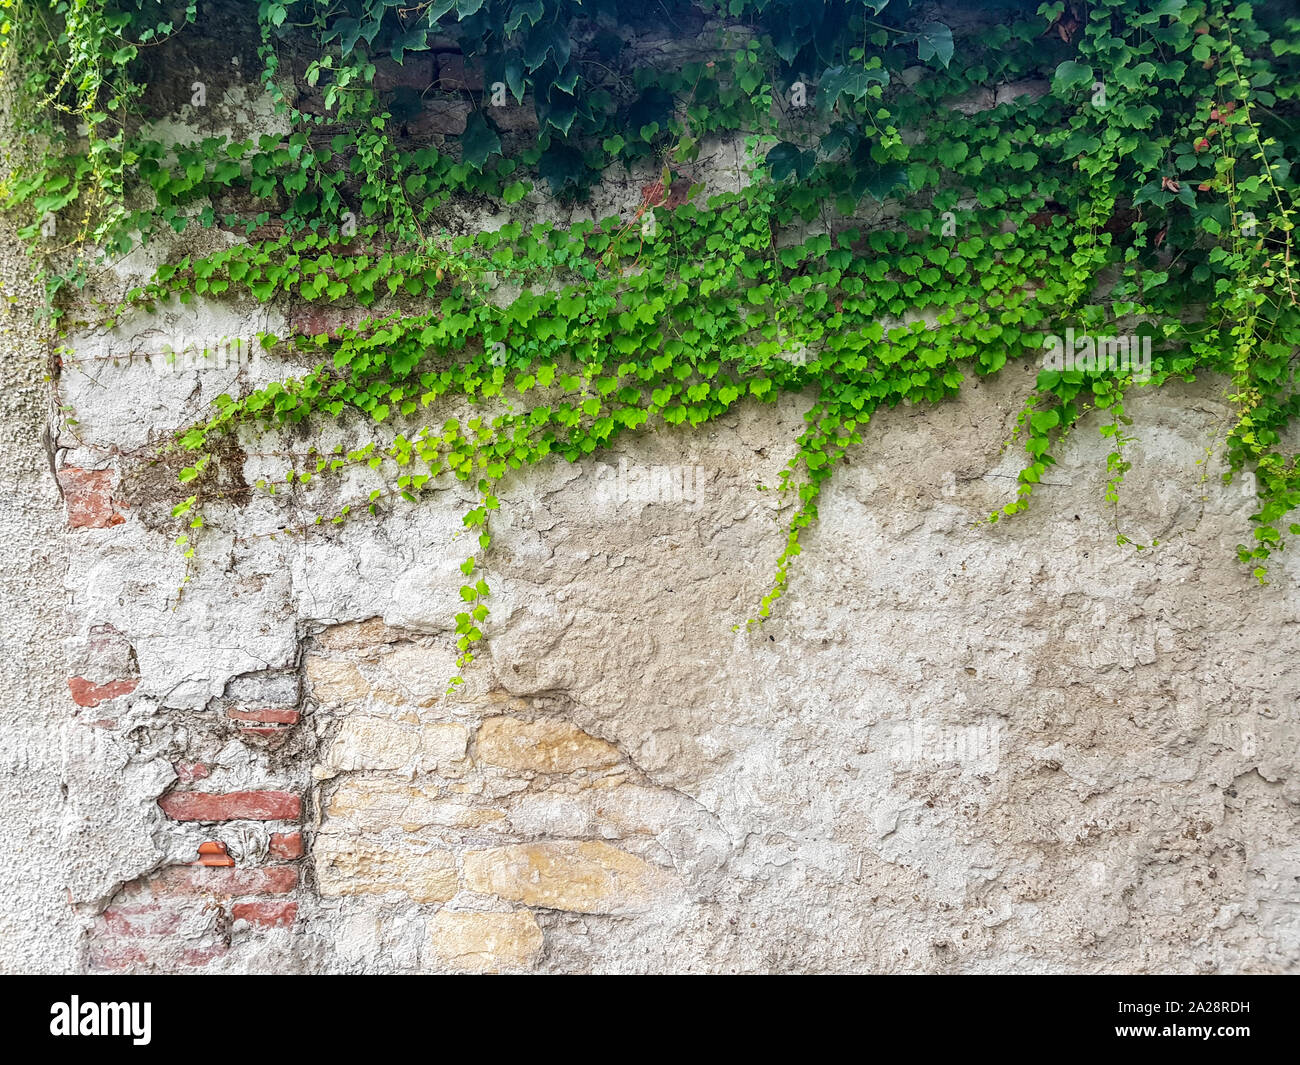 Grobe Mauer und mit grünem Efeu auf der rechten Seite des Bildes. Guter Hintergrund Bild. Stockfoto